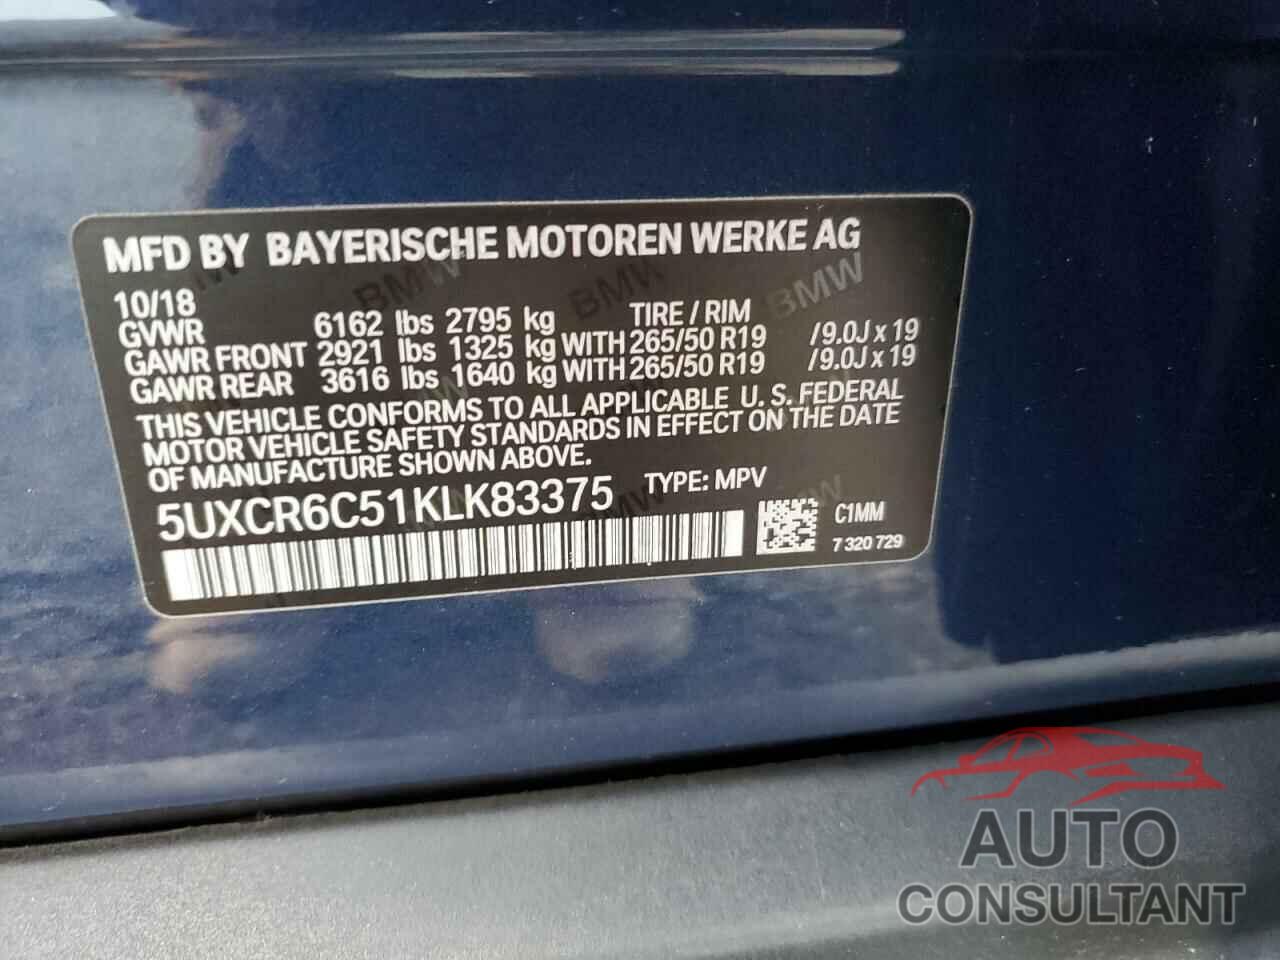 BMW X5 2019 - 5UXCR6C51KLK83375